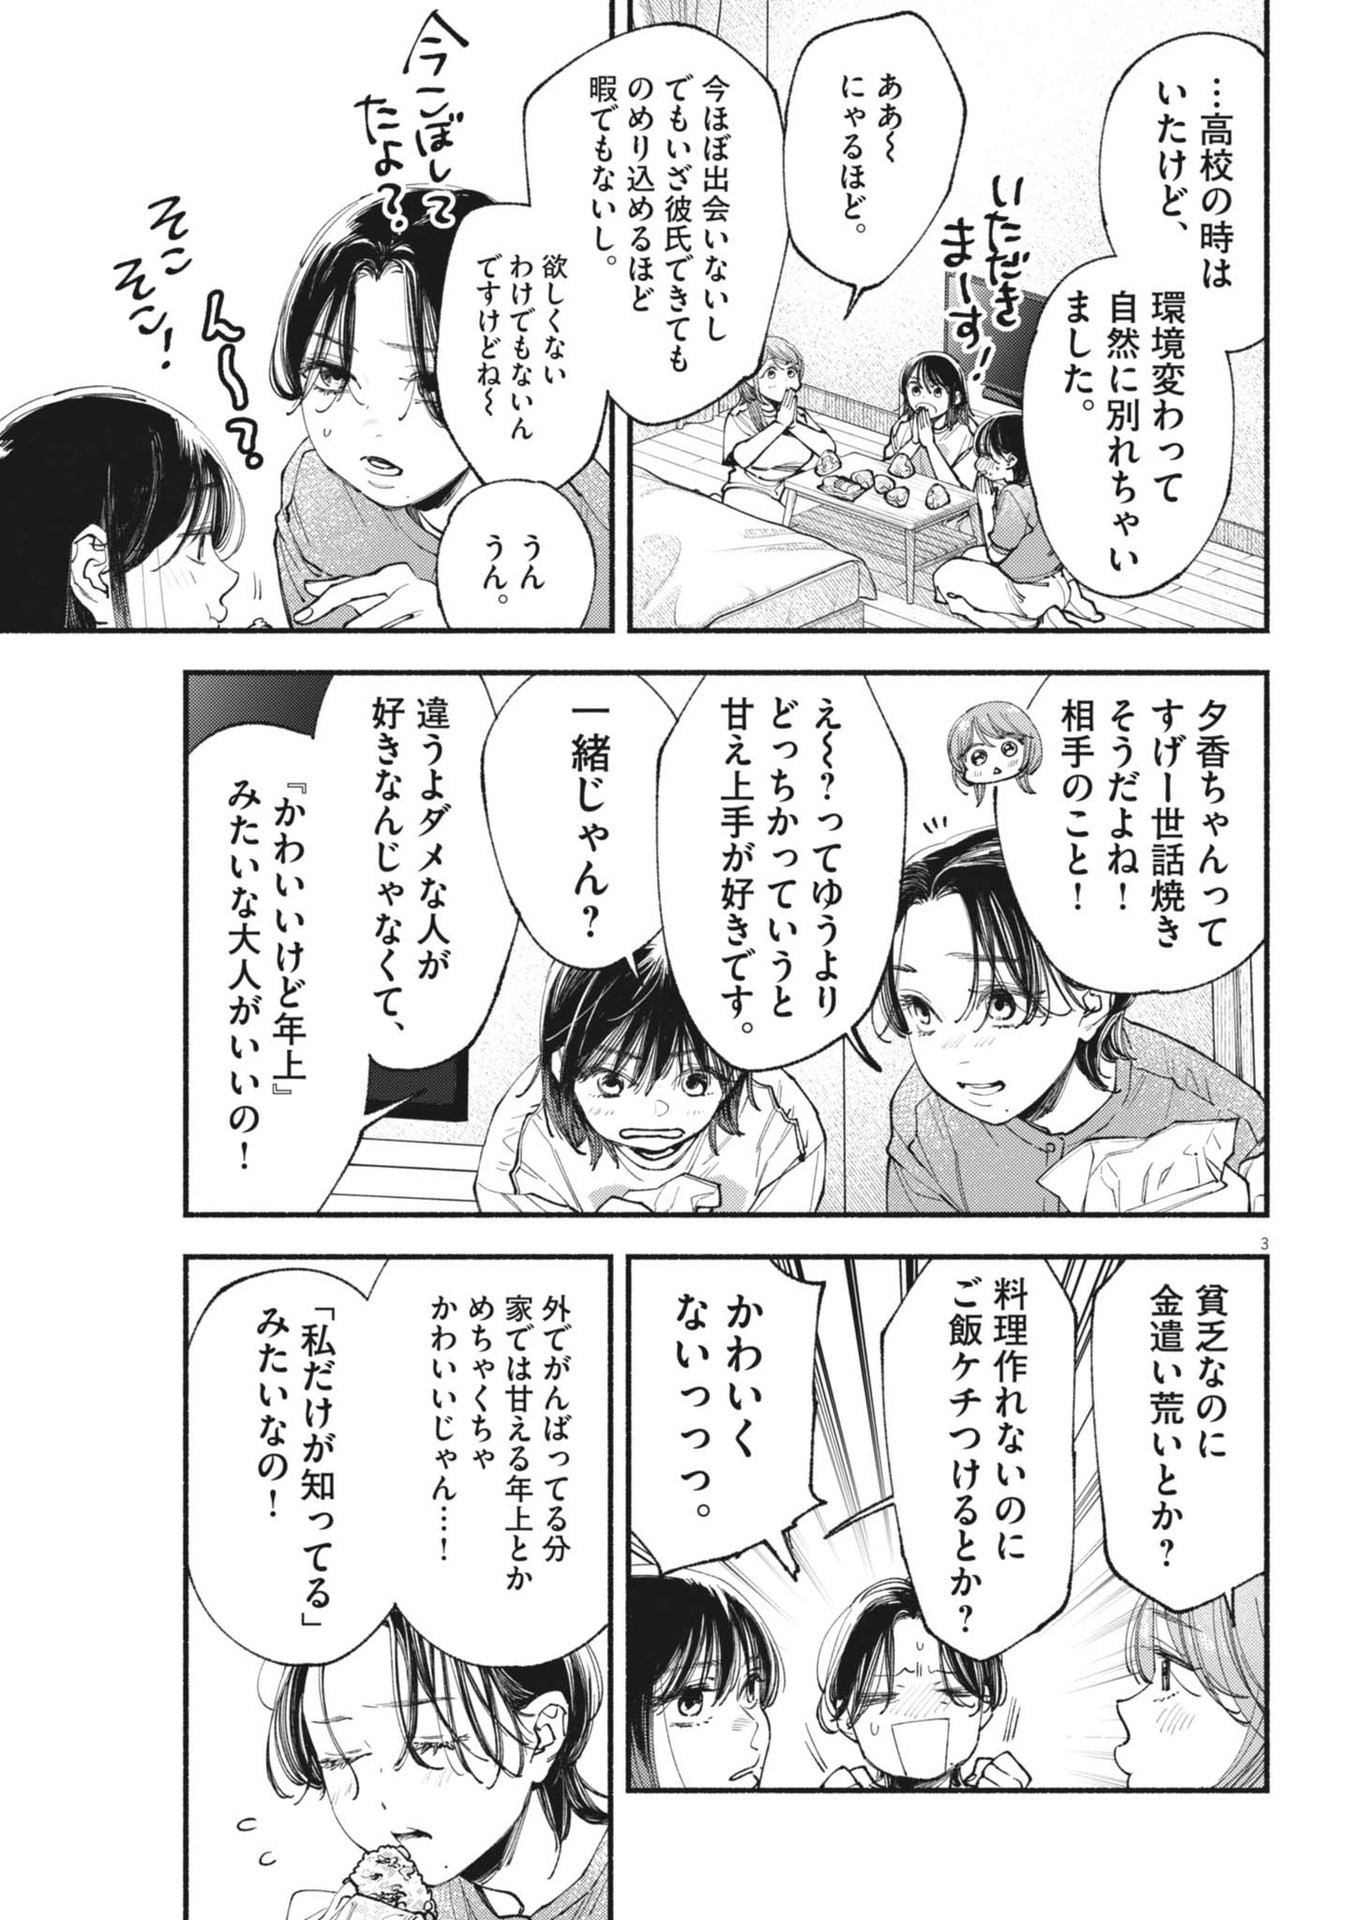 Konoyo wa Tatakau Kachi ga Aru  - Chapter 26 - Page 3